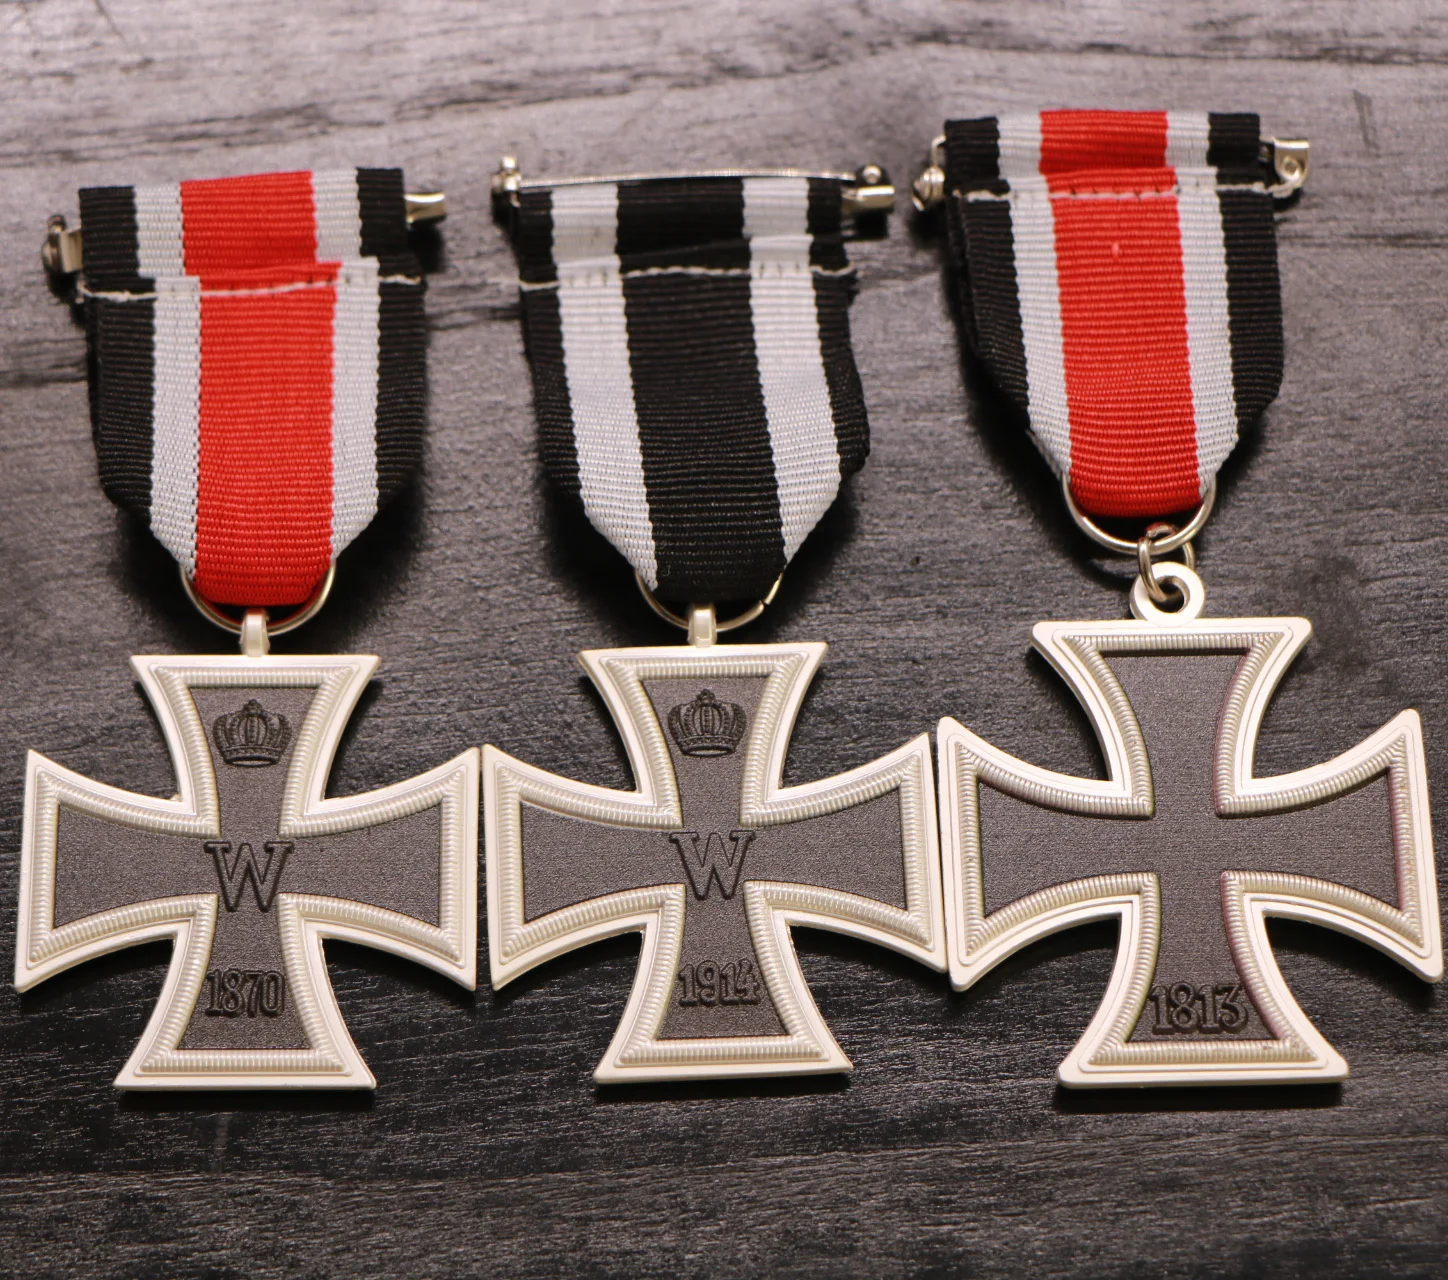 3 шт./лот, Германия, 1813, Железный крест+ 1870, Железный крест+ 1914, железный крест, 2 класса, военная медаль Пруссии